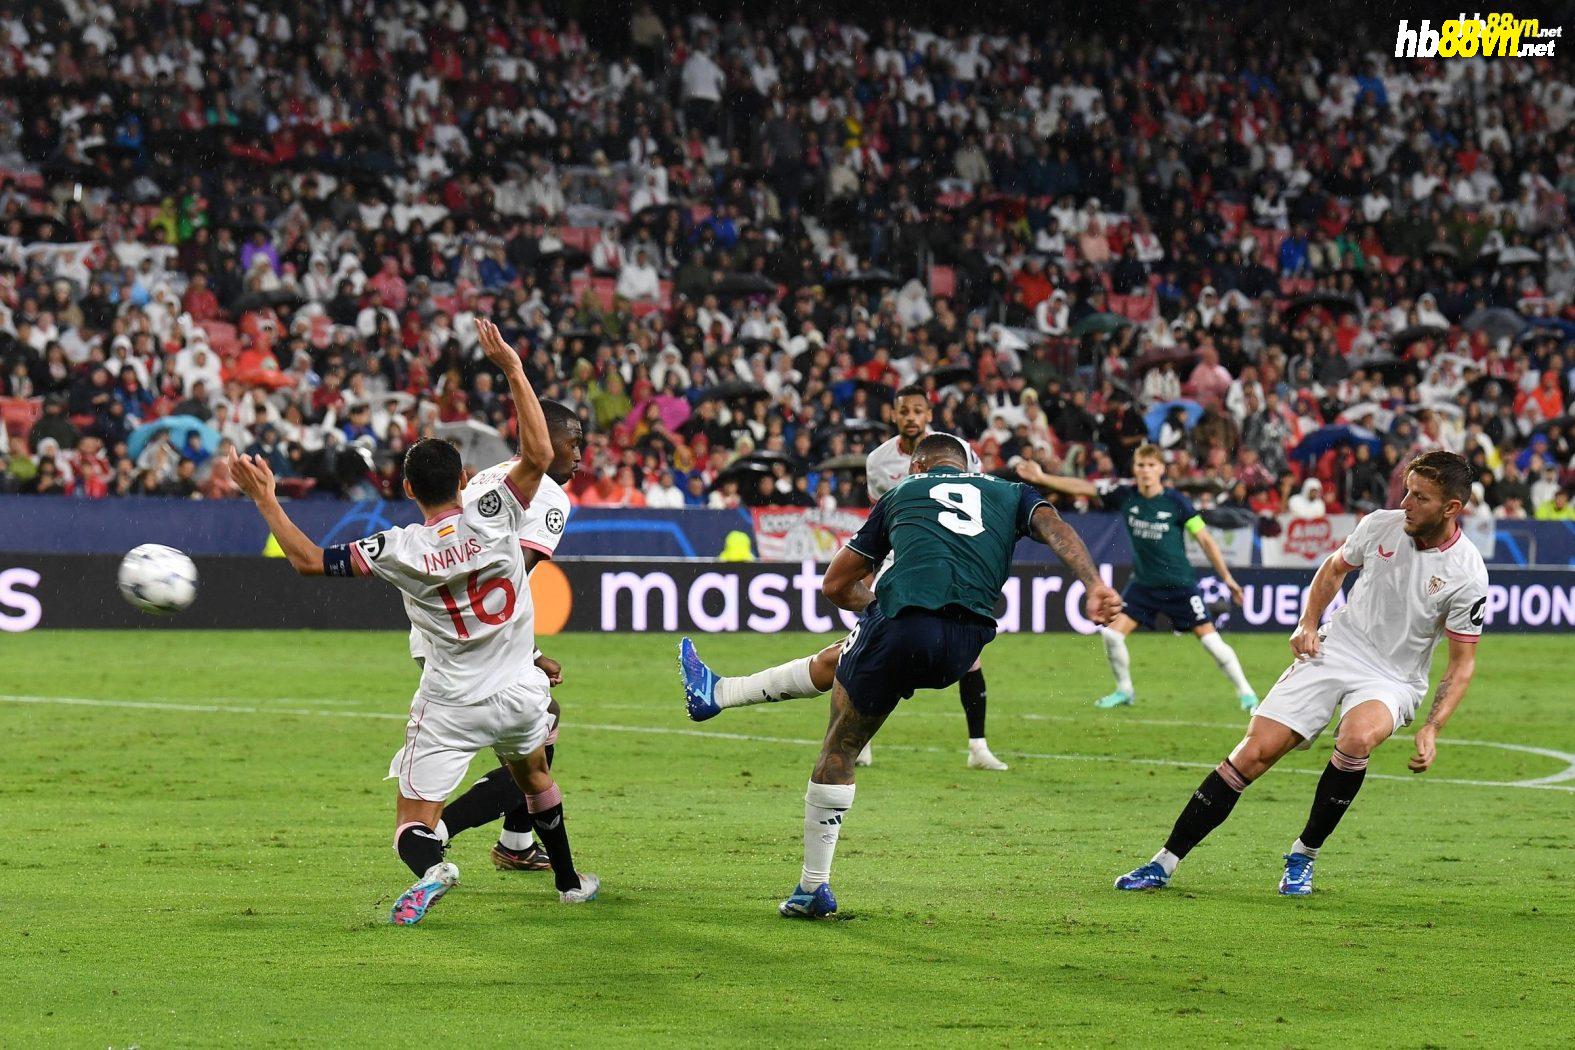 Jesus trong pha làm bàn nâng tỷ số lên 2-0 trận Arsenal hạ chủ nhà Sevilla 2-1 ở lượt ba bảng B Champions League trên sân Sanchez Pizjuan ngày 24/10. Ảnh: X / Arsenal